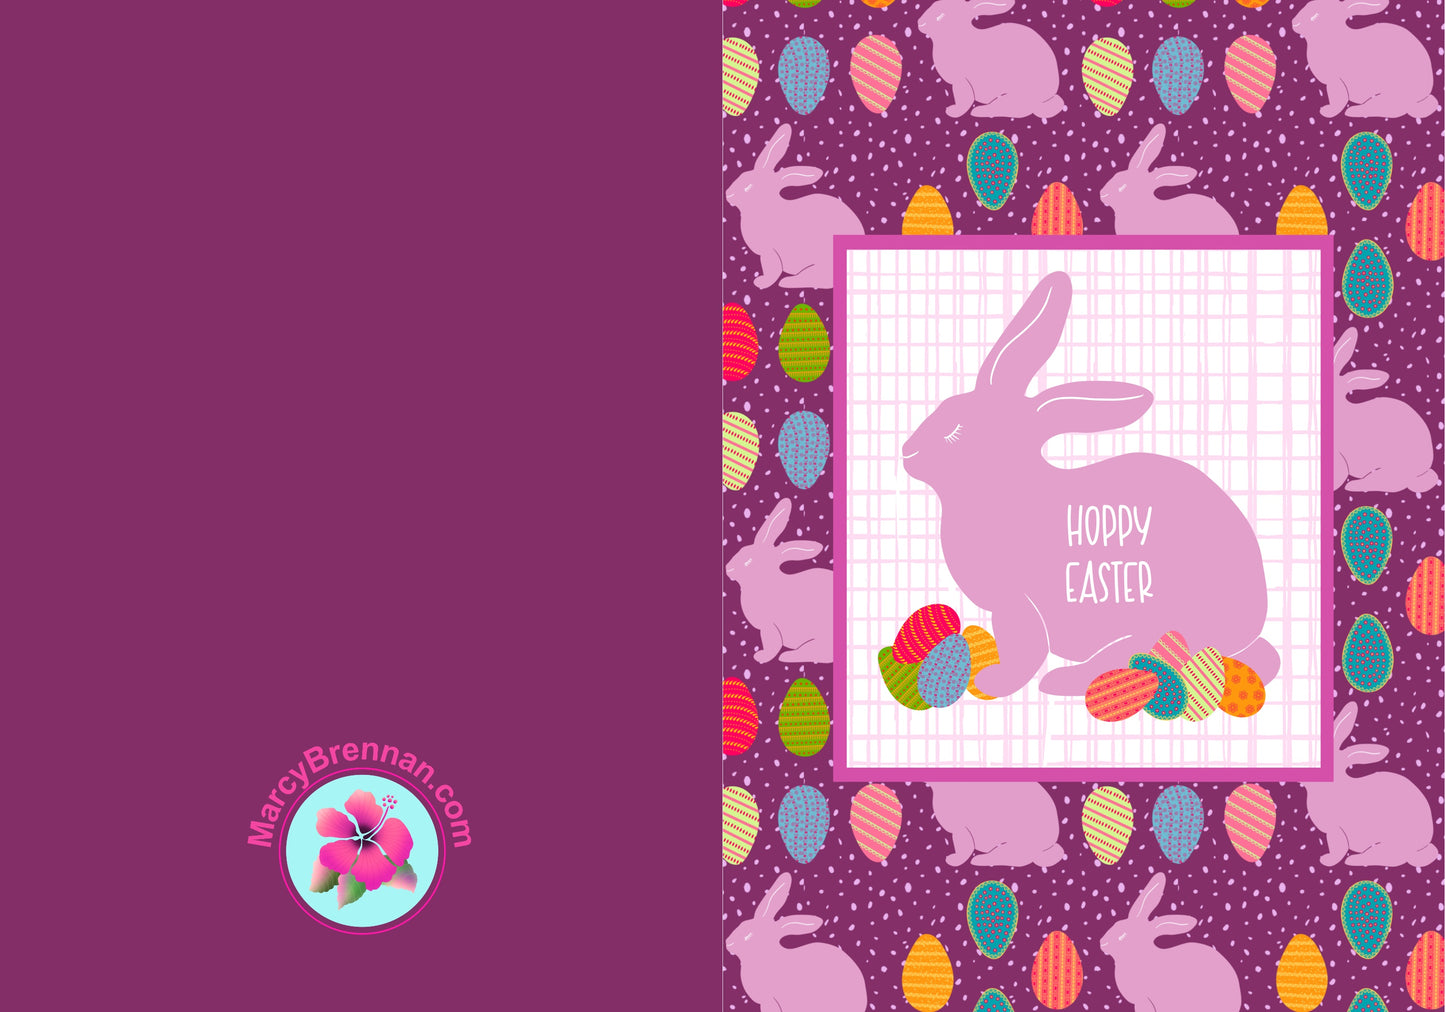 digital download Easter card, instant download Easter card, Digital download cute bunny Easter card